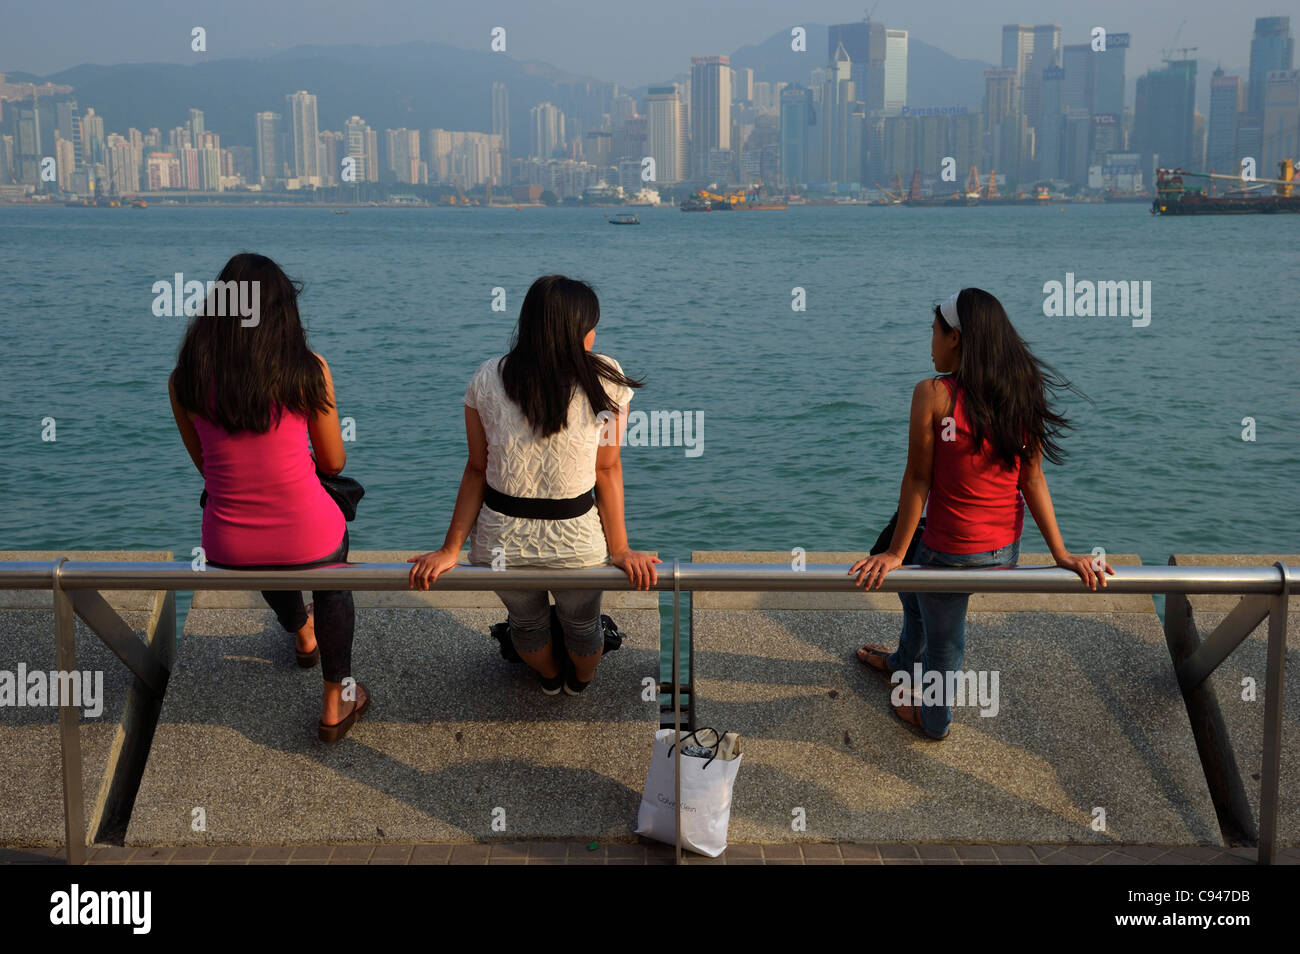 Trois filles Philippine bénéficiant d'une vue sur le port au quai de Kowloon, Hong Kong, Chine SAR Banque D'Images